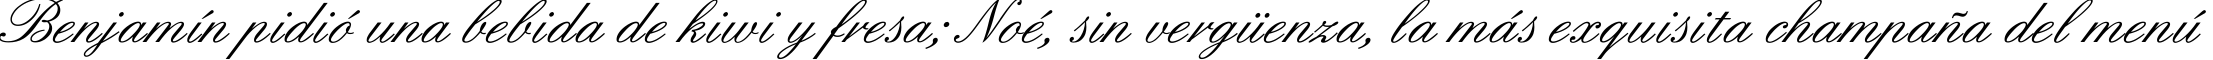 Пример написания шрифтом English текста на испанском